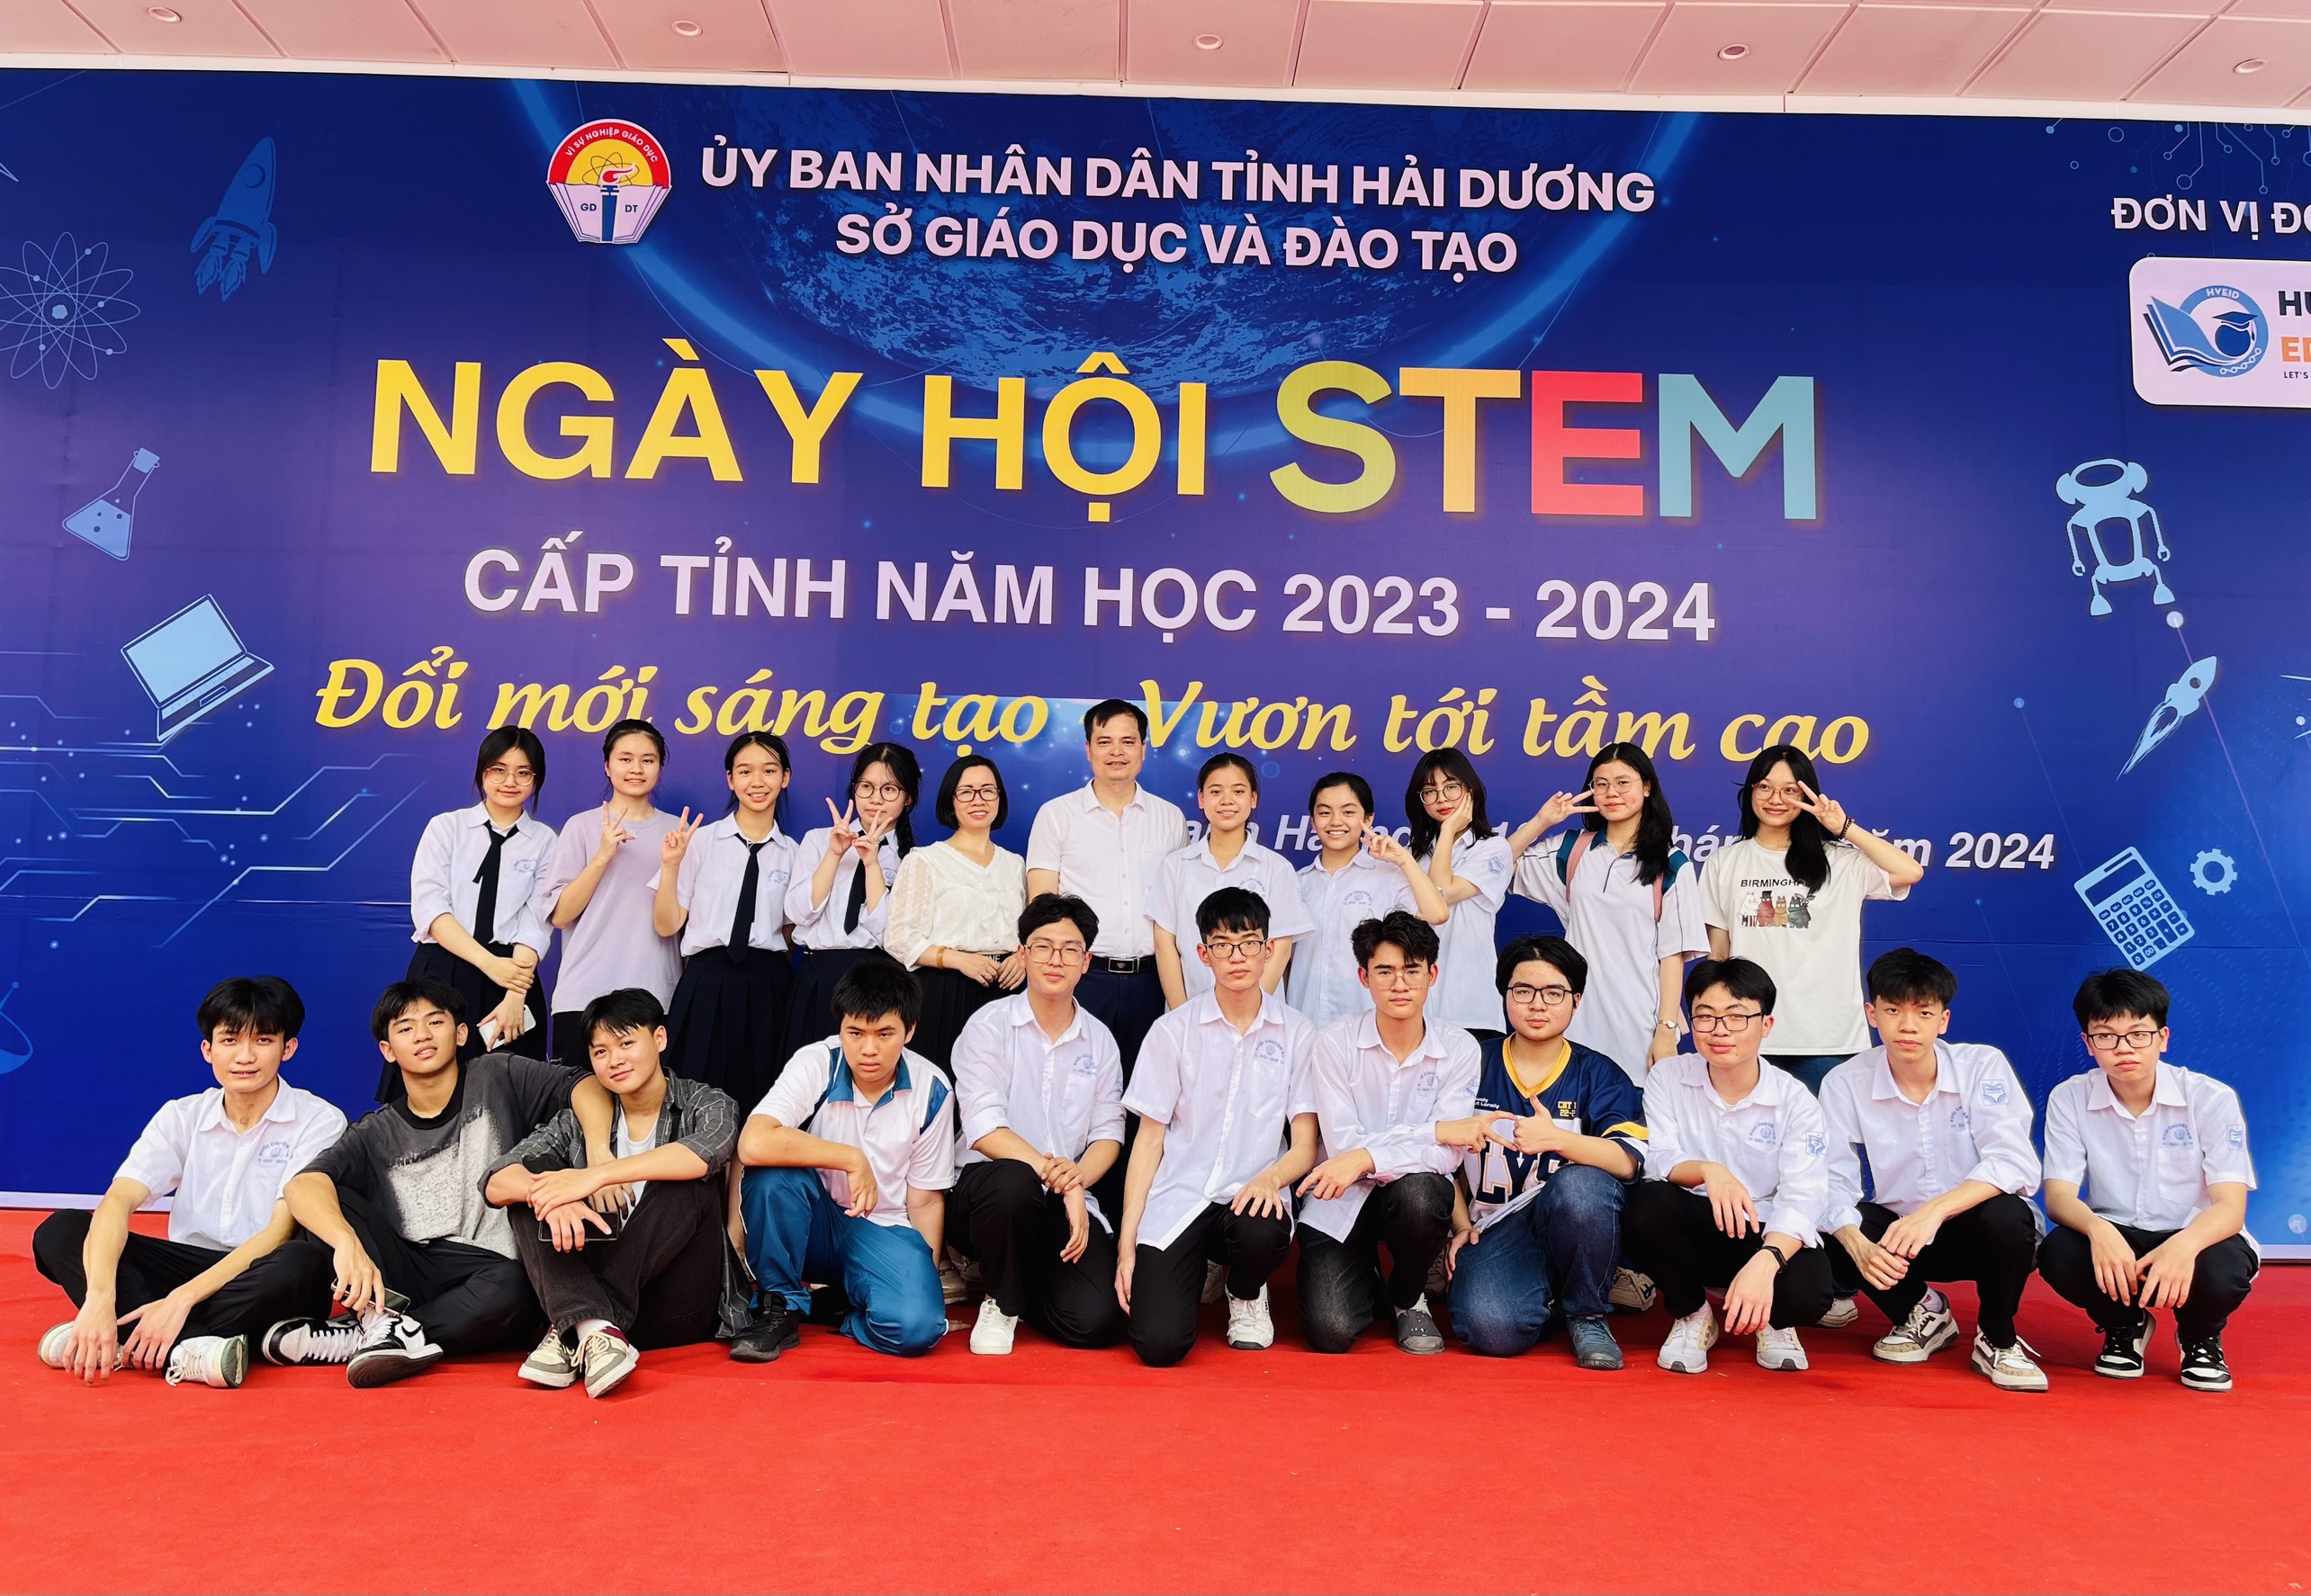 Chuyên Nguyễn Trãi giành giải Nhất Robotics trong ngày hội STEM tỉnh Hải Dương.